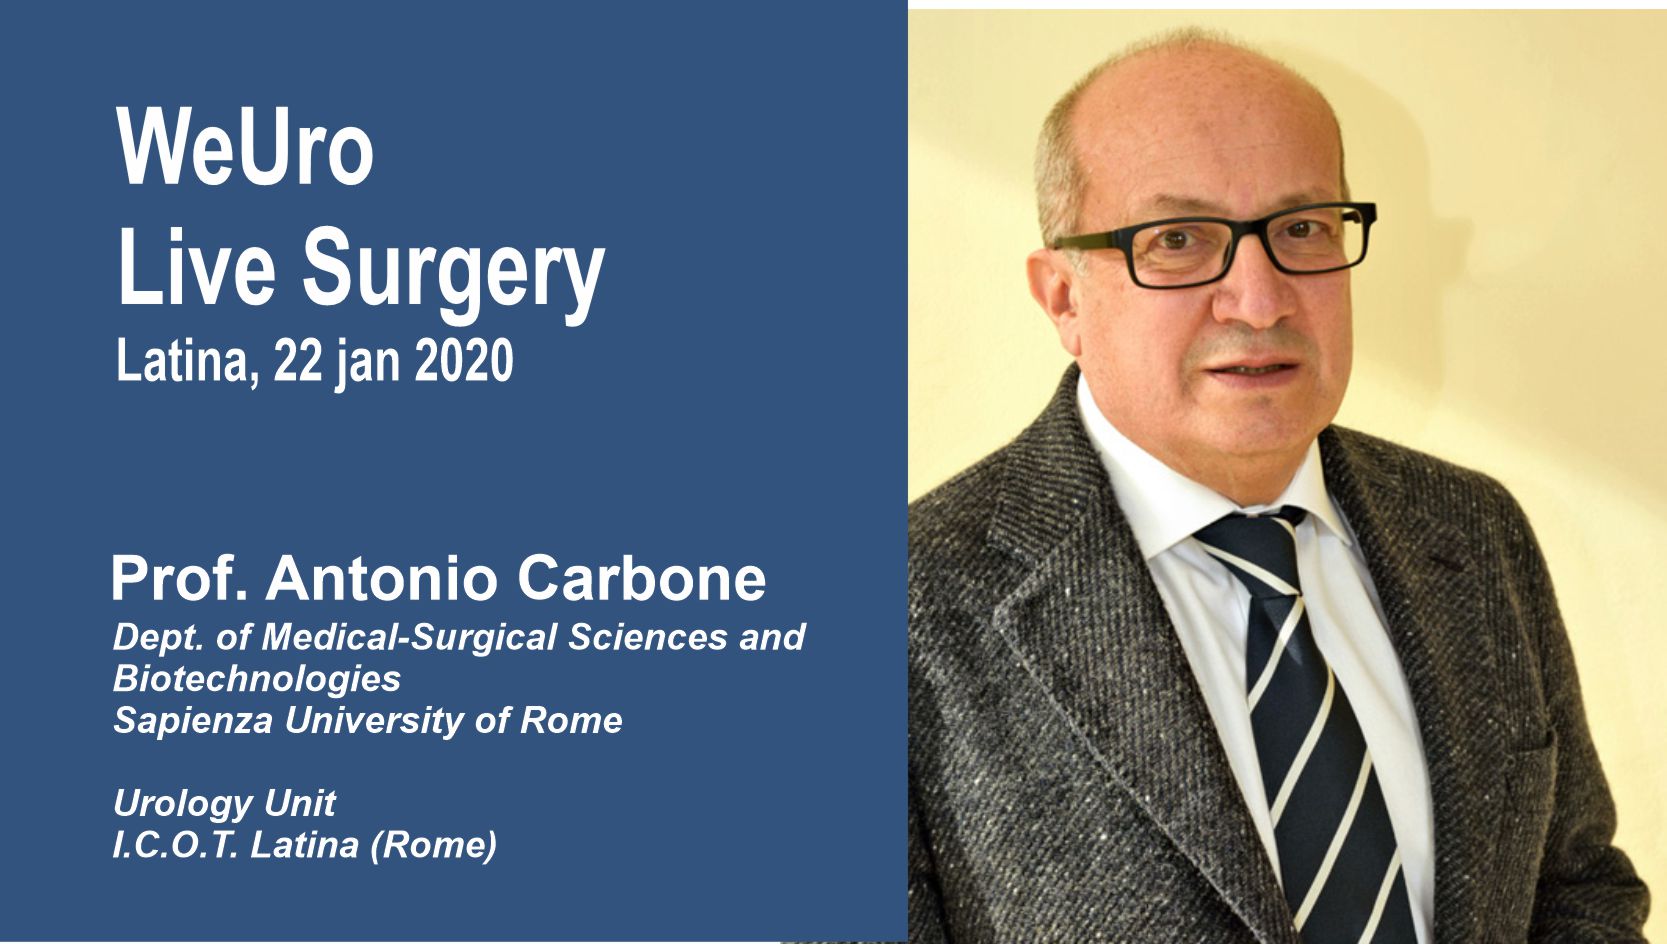 Prof. Antonio Carbone